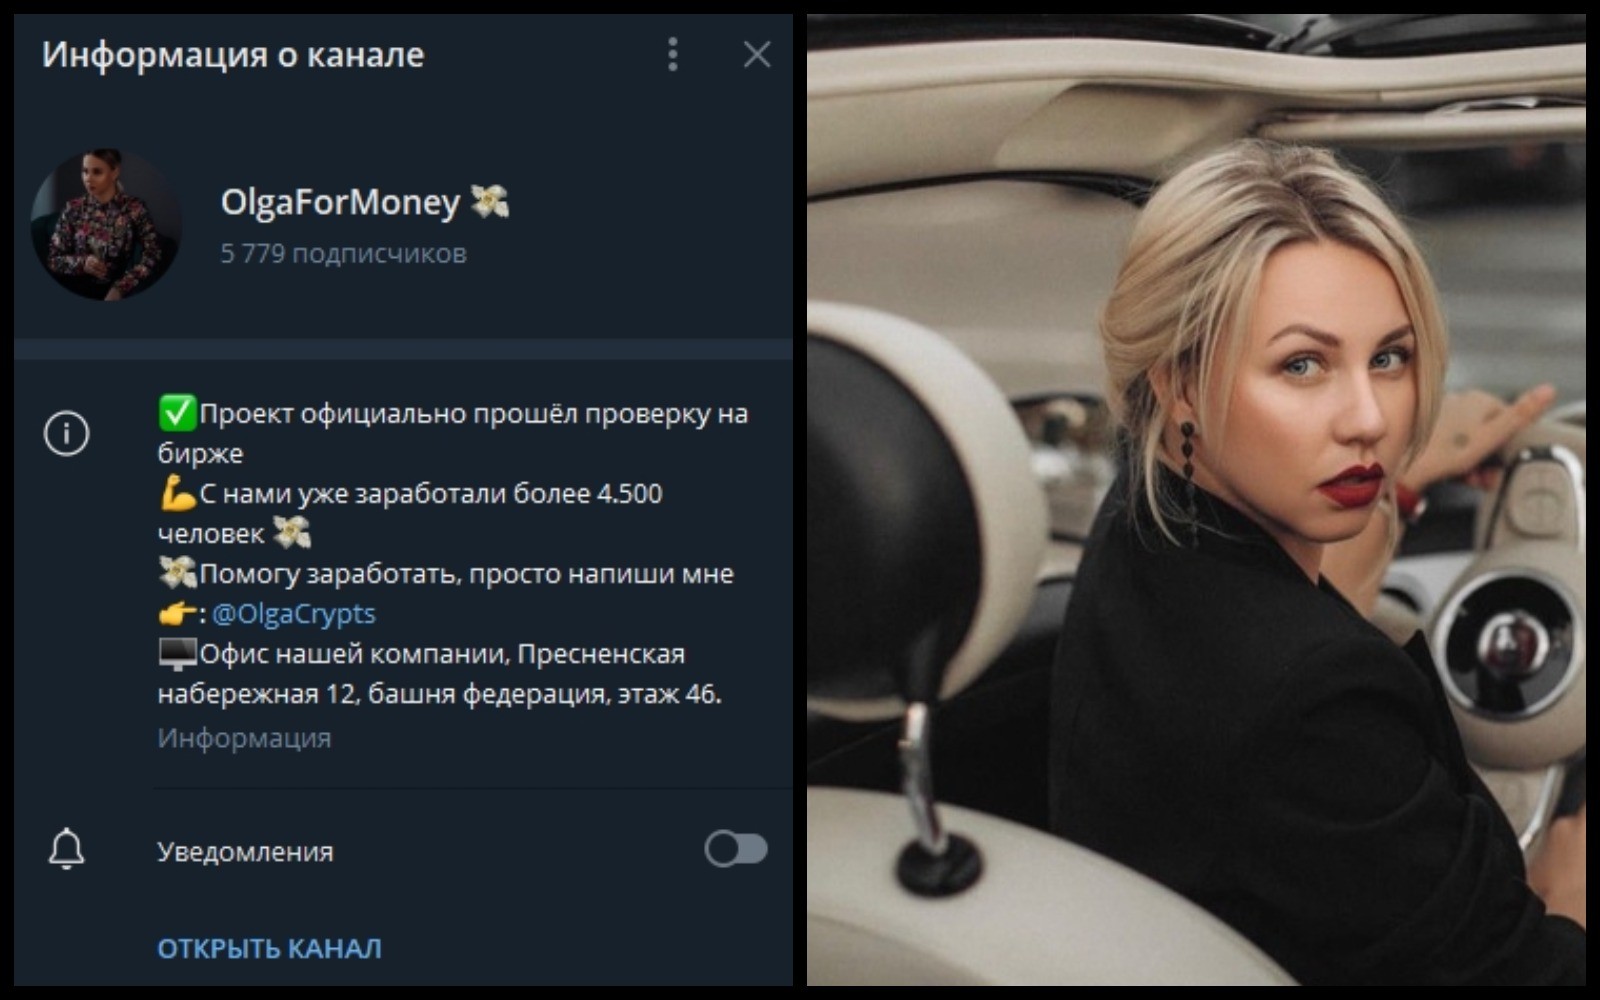 Olga Pro Money информация о канале